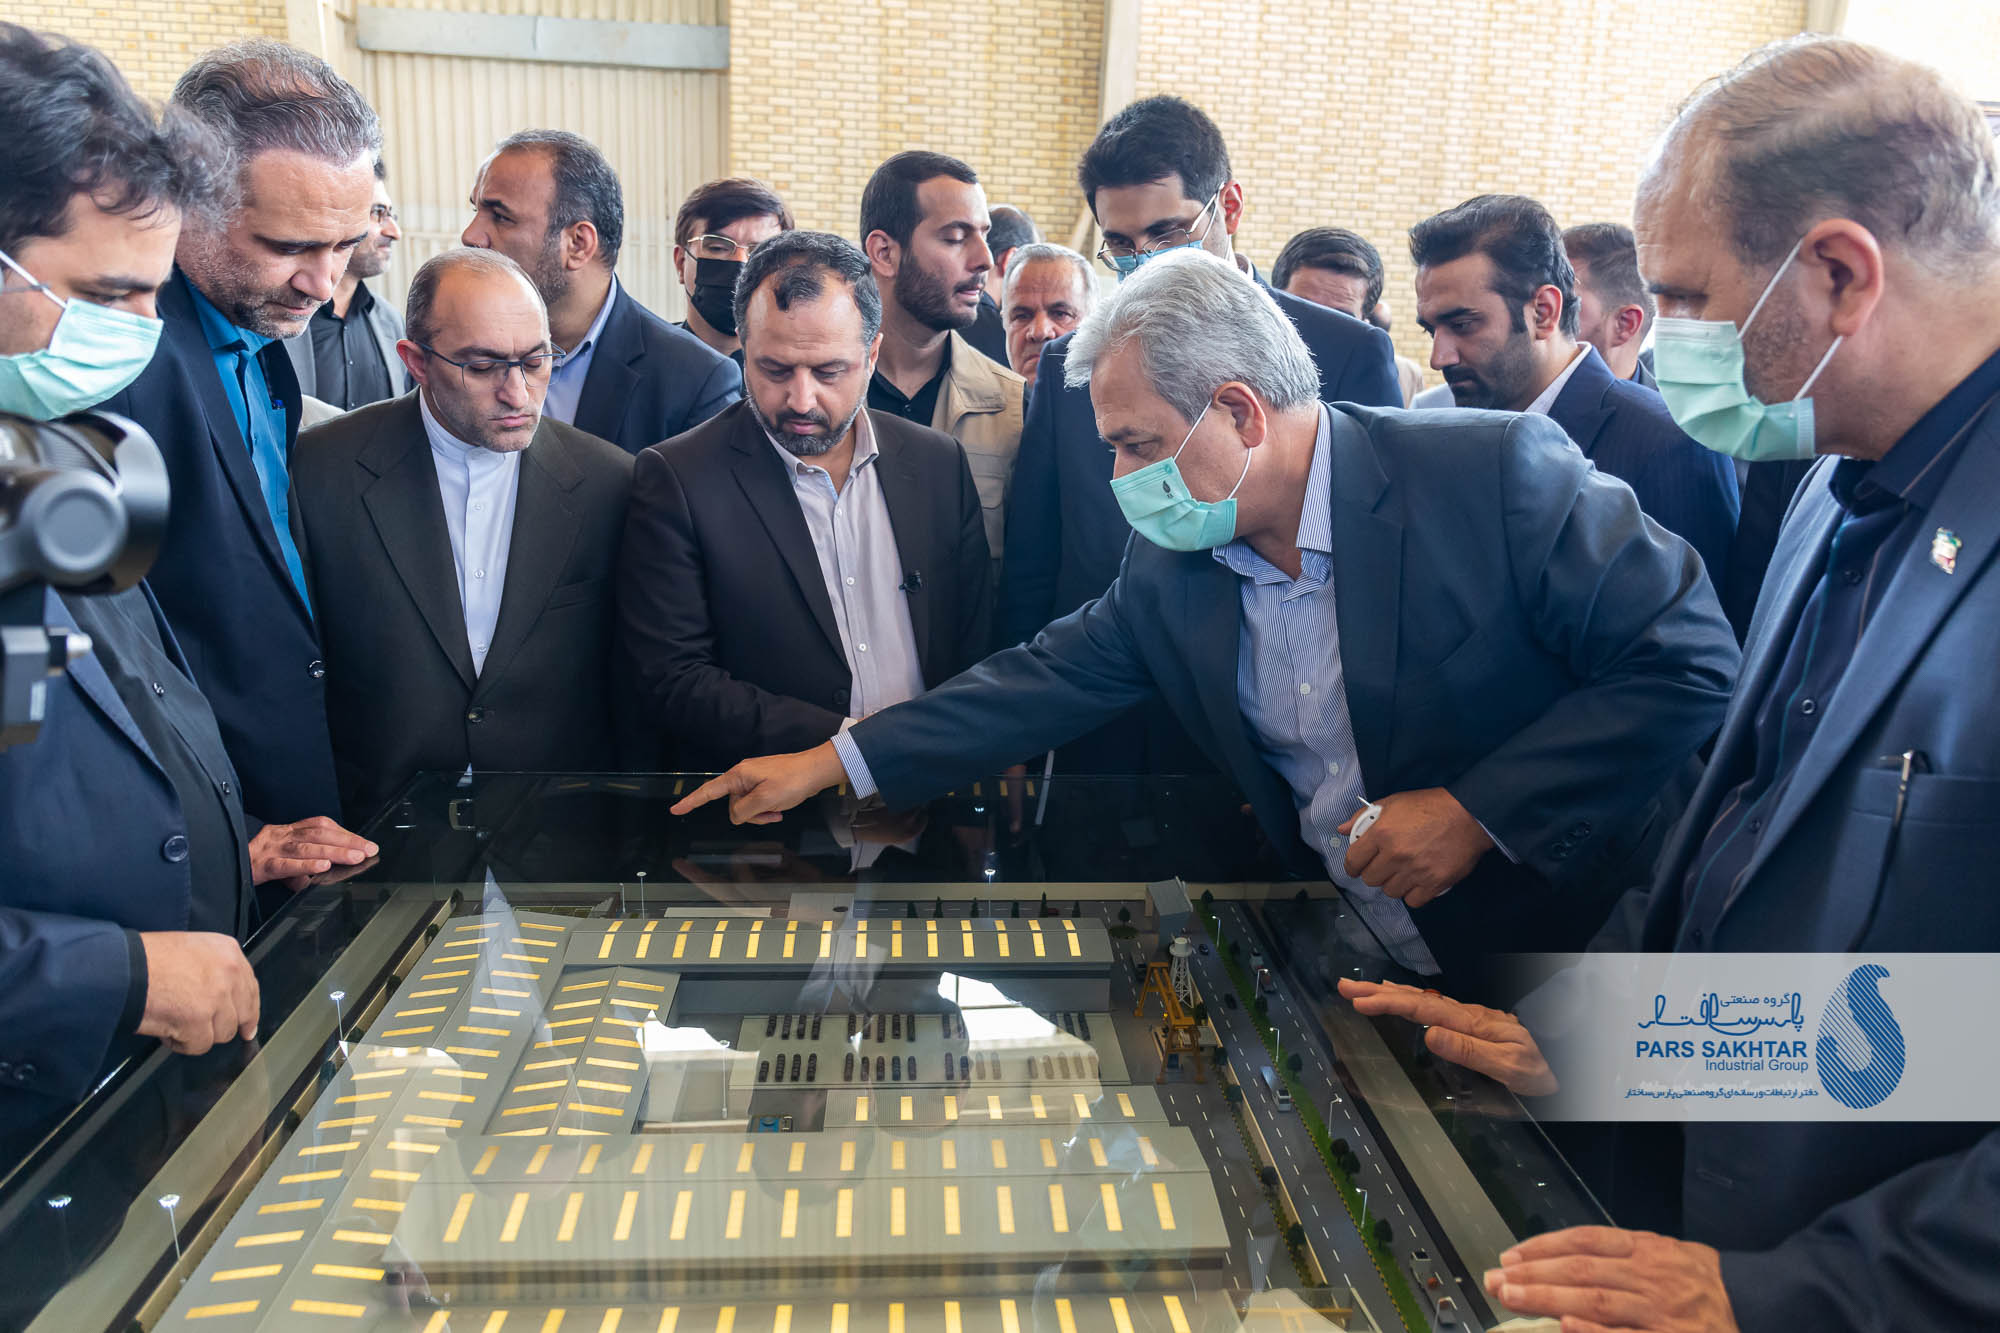 وزیر اقتصاد و دارایی در بازدید از شرکت صنایع فولاد شهریار تبریز: با همین همت و پشتکار ادامه دهید